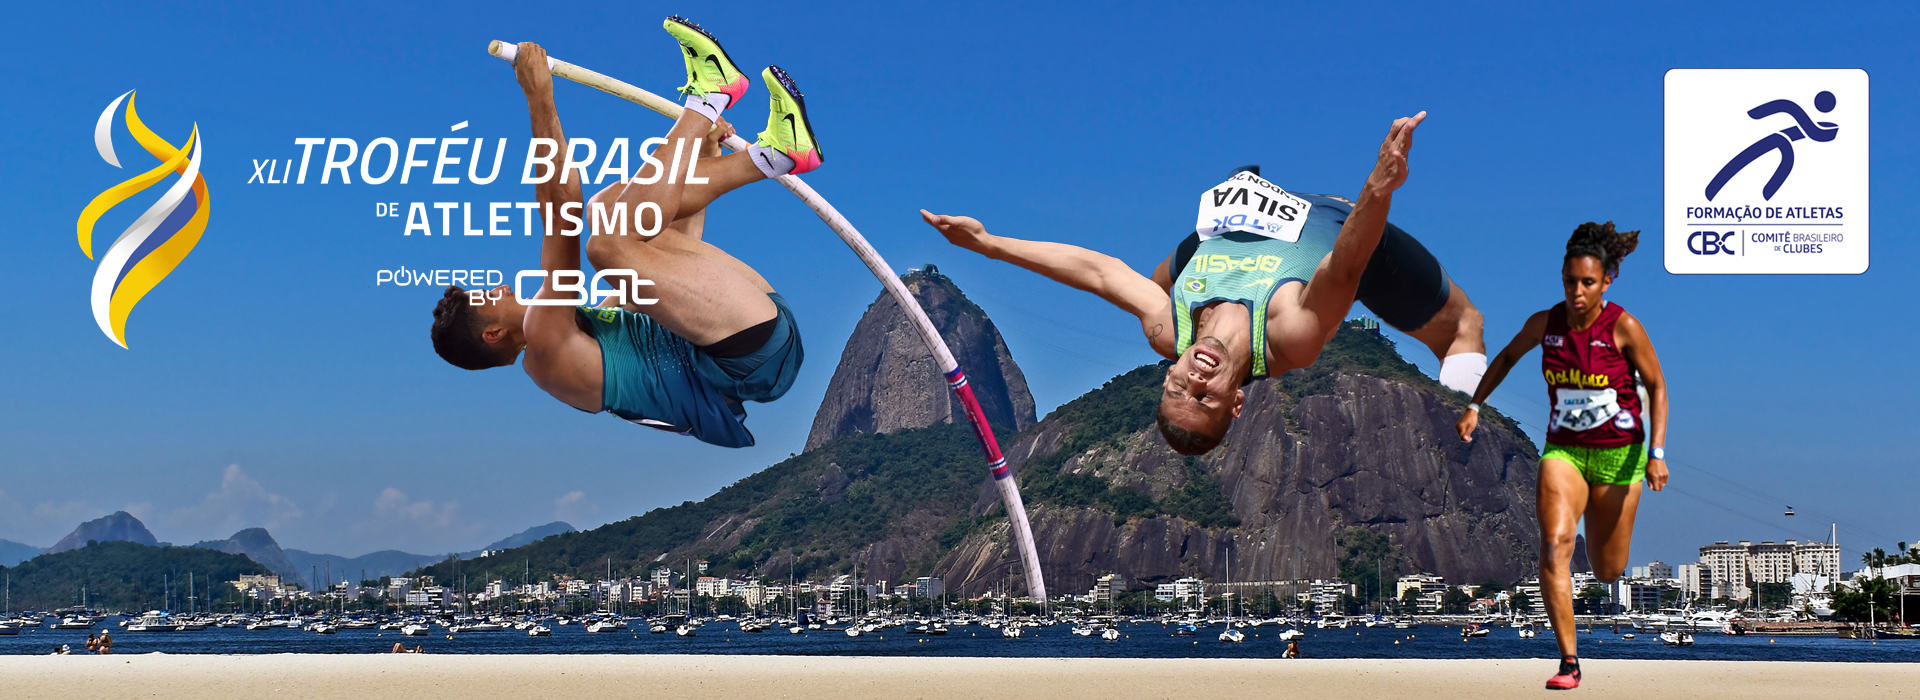 CBAt confirma CBI®-Troféu Brasil de Atletismo no Rio de Janeiro/RJ